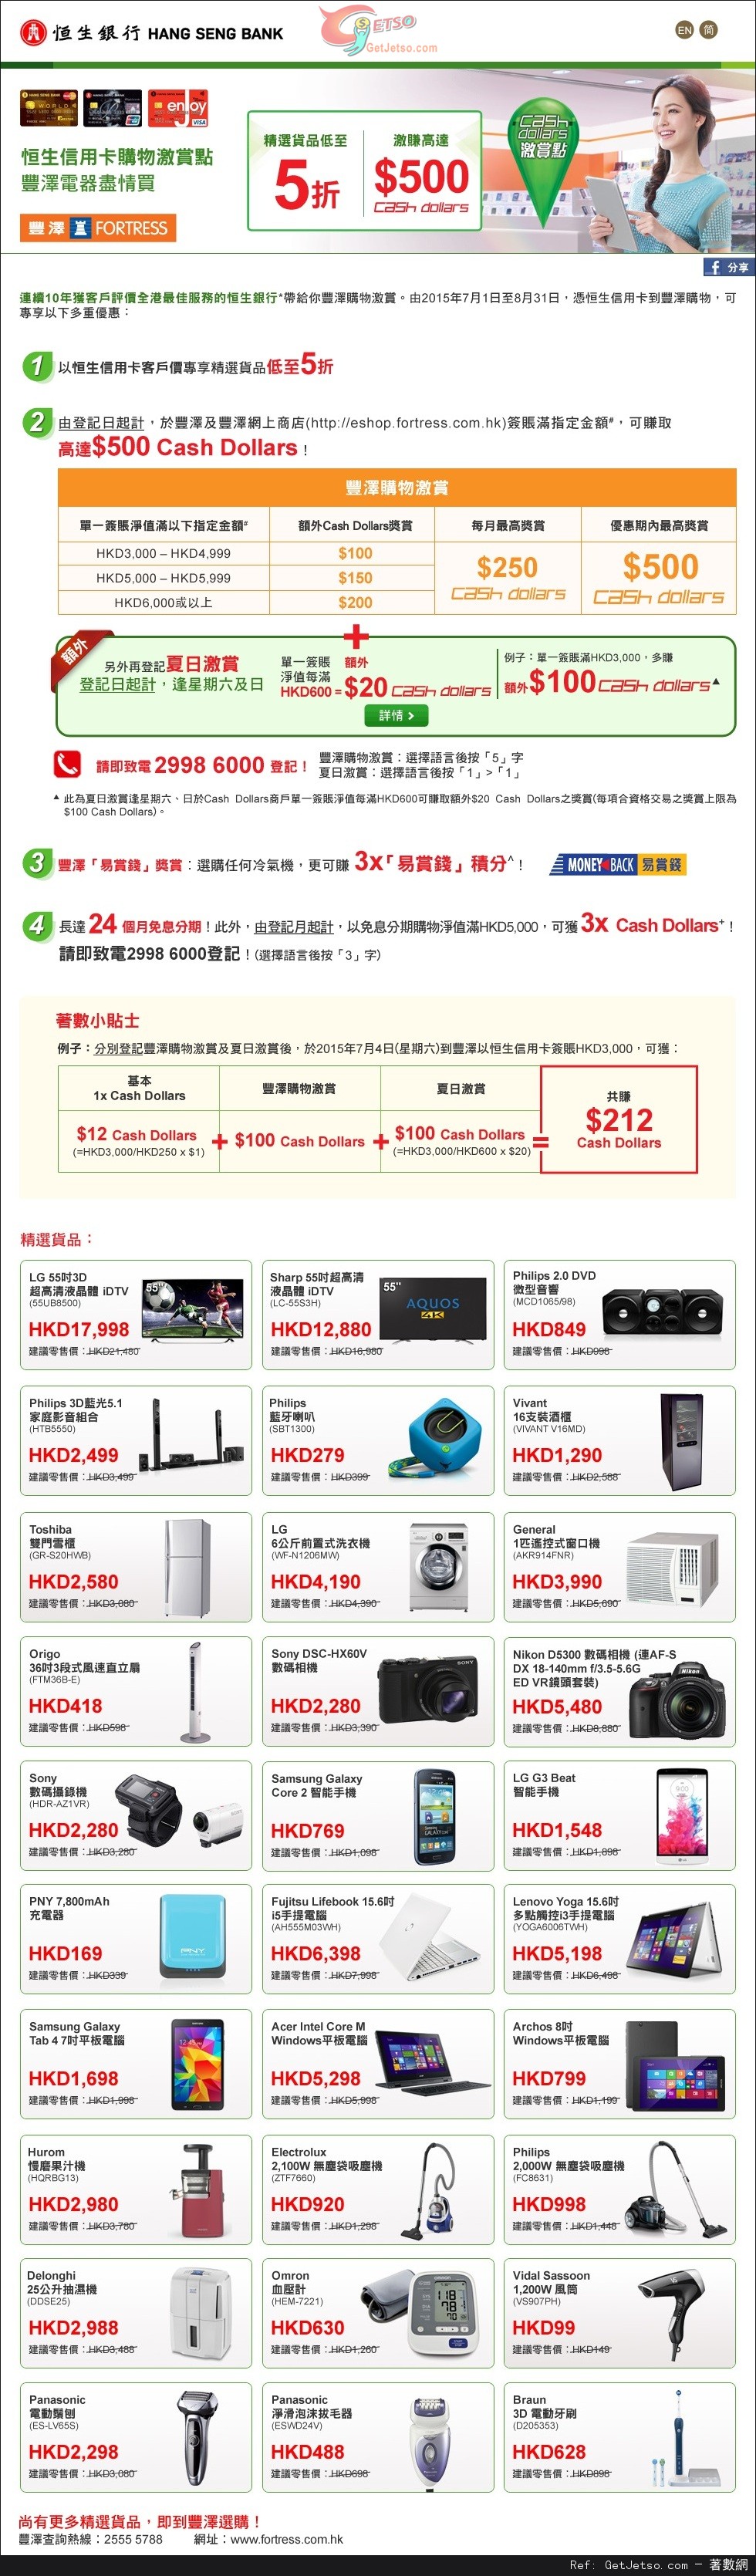 恒生信用卡享豐澤電器精選貨品低至半價優惠(至15年8月31日)圖片1